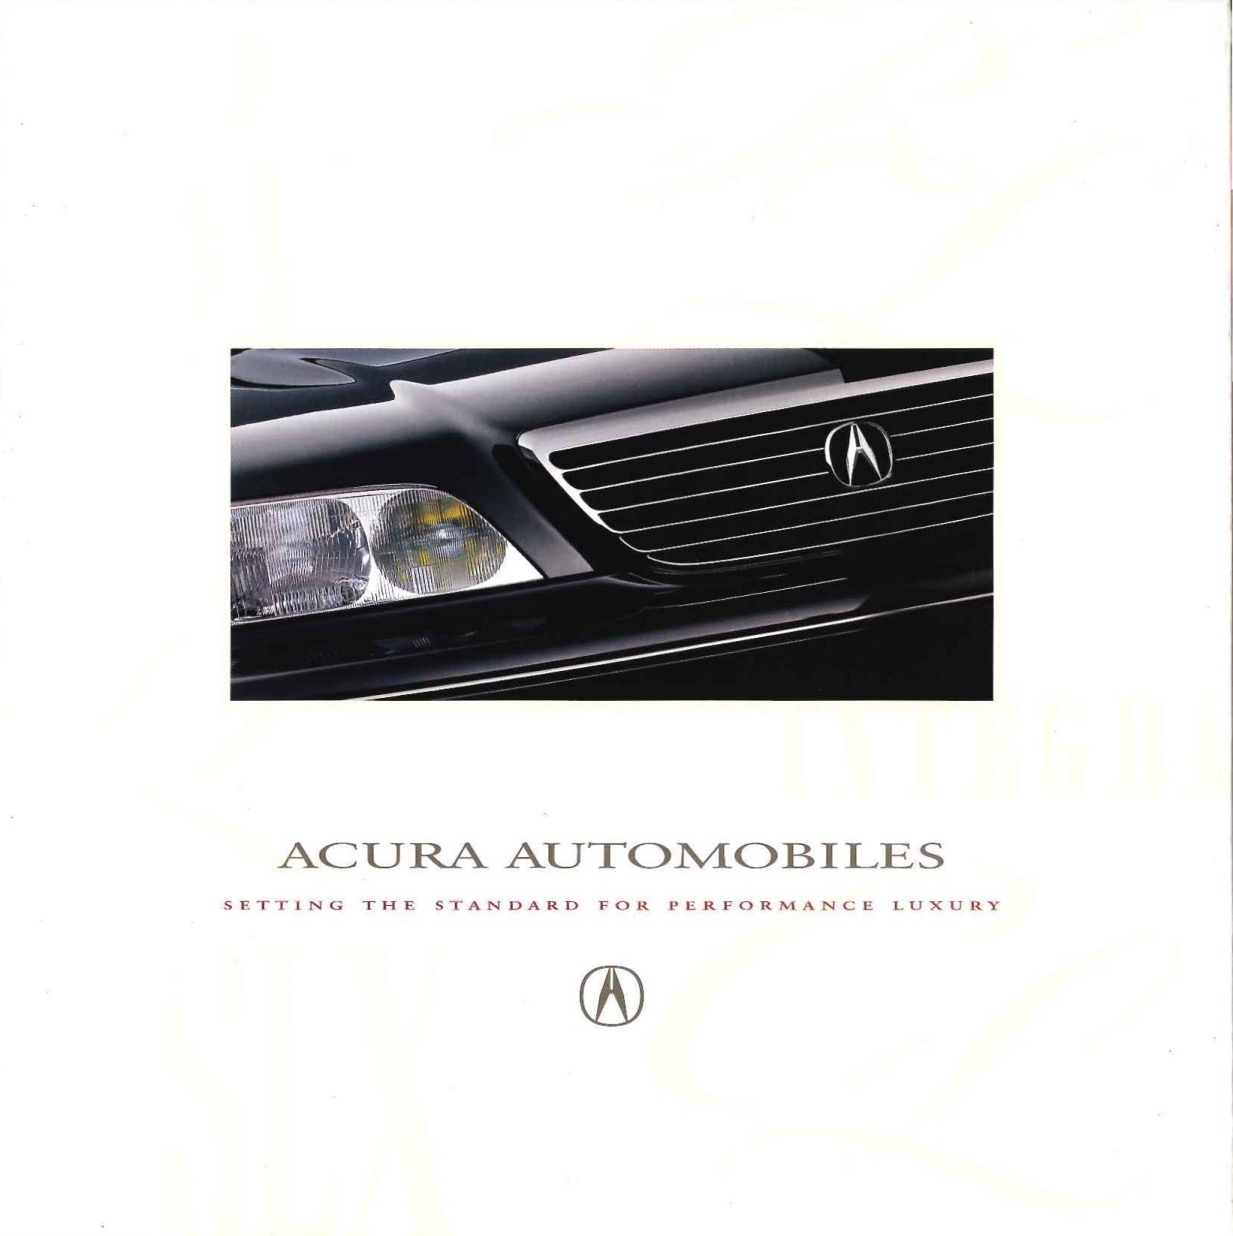 1997 Acura Brochure Page 5